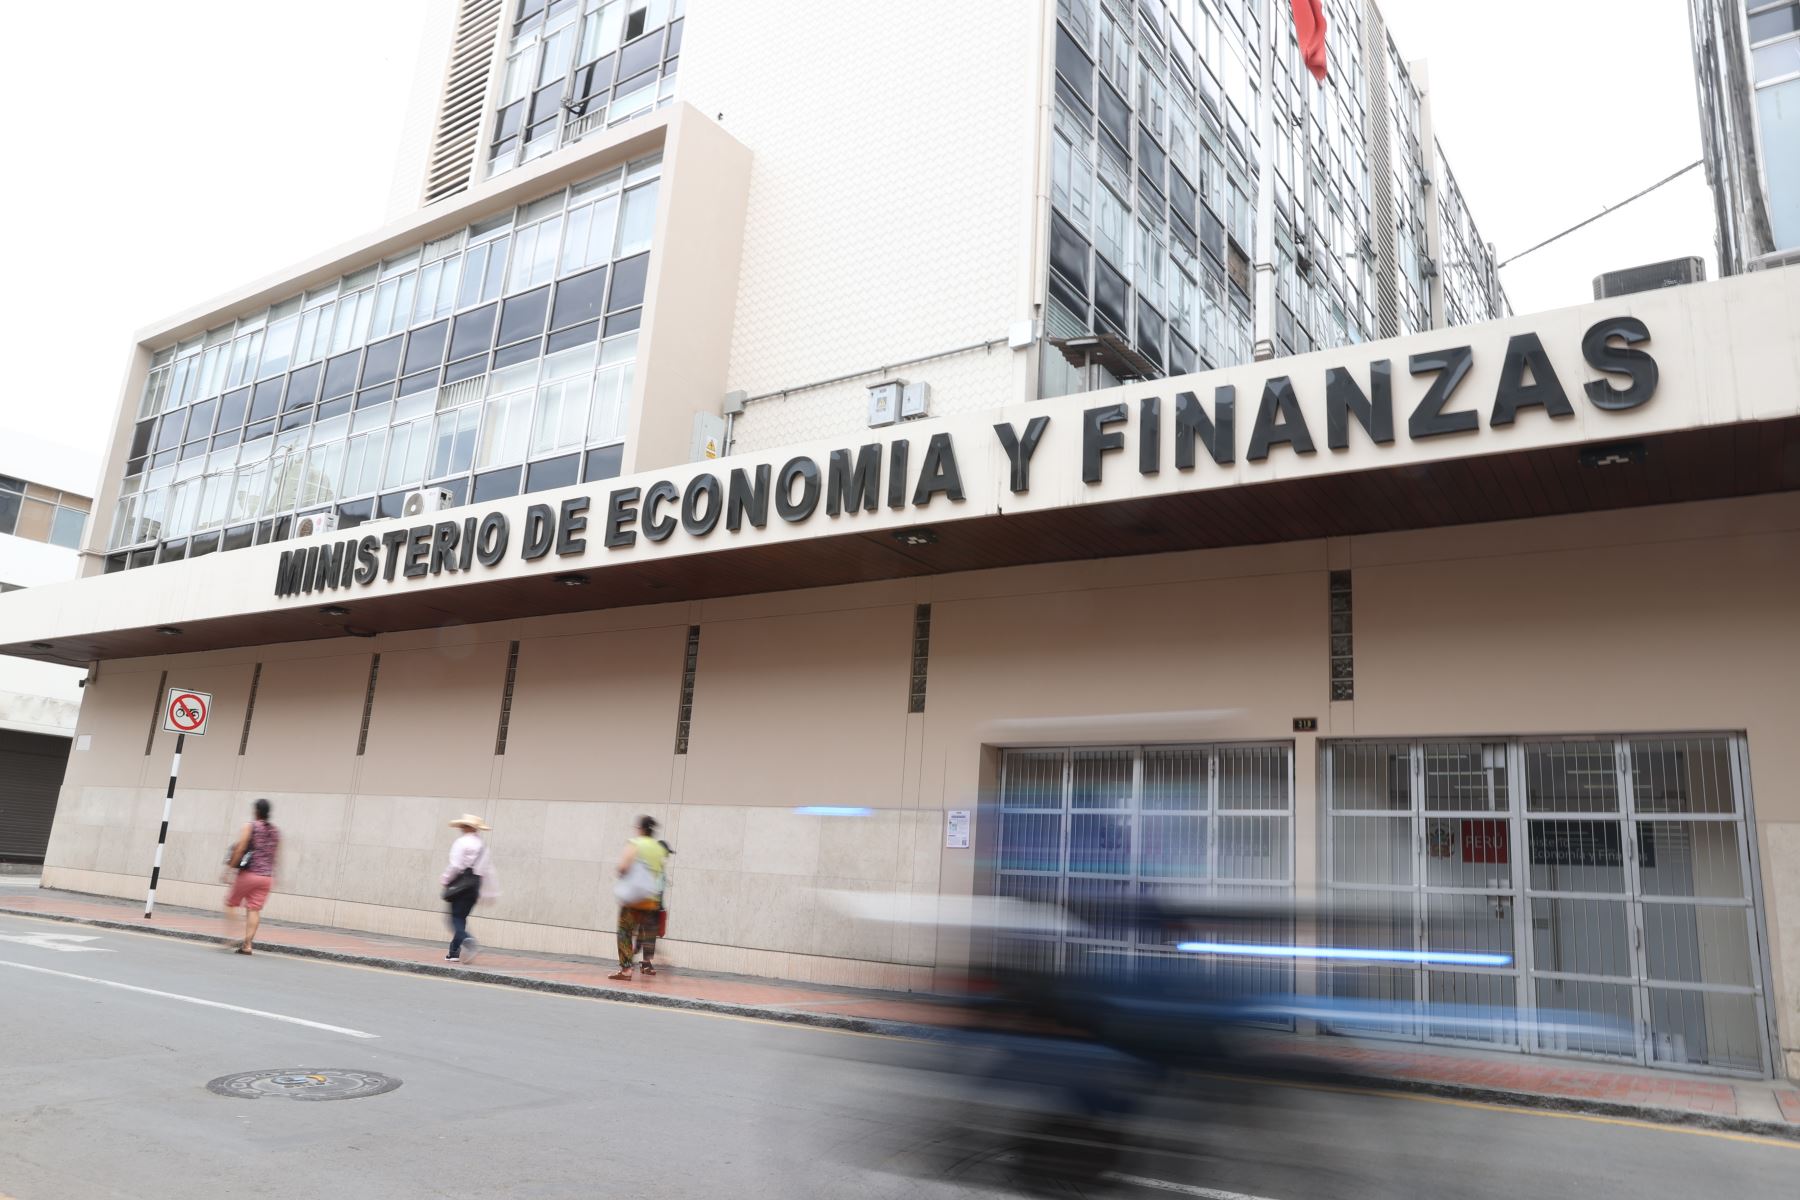 Sede del Ministerio de Economía y Finanzas (MEF) en el centro de Lima. Foto: ANDINA/Jhonel Rodríguez Robles